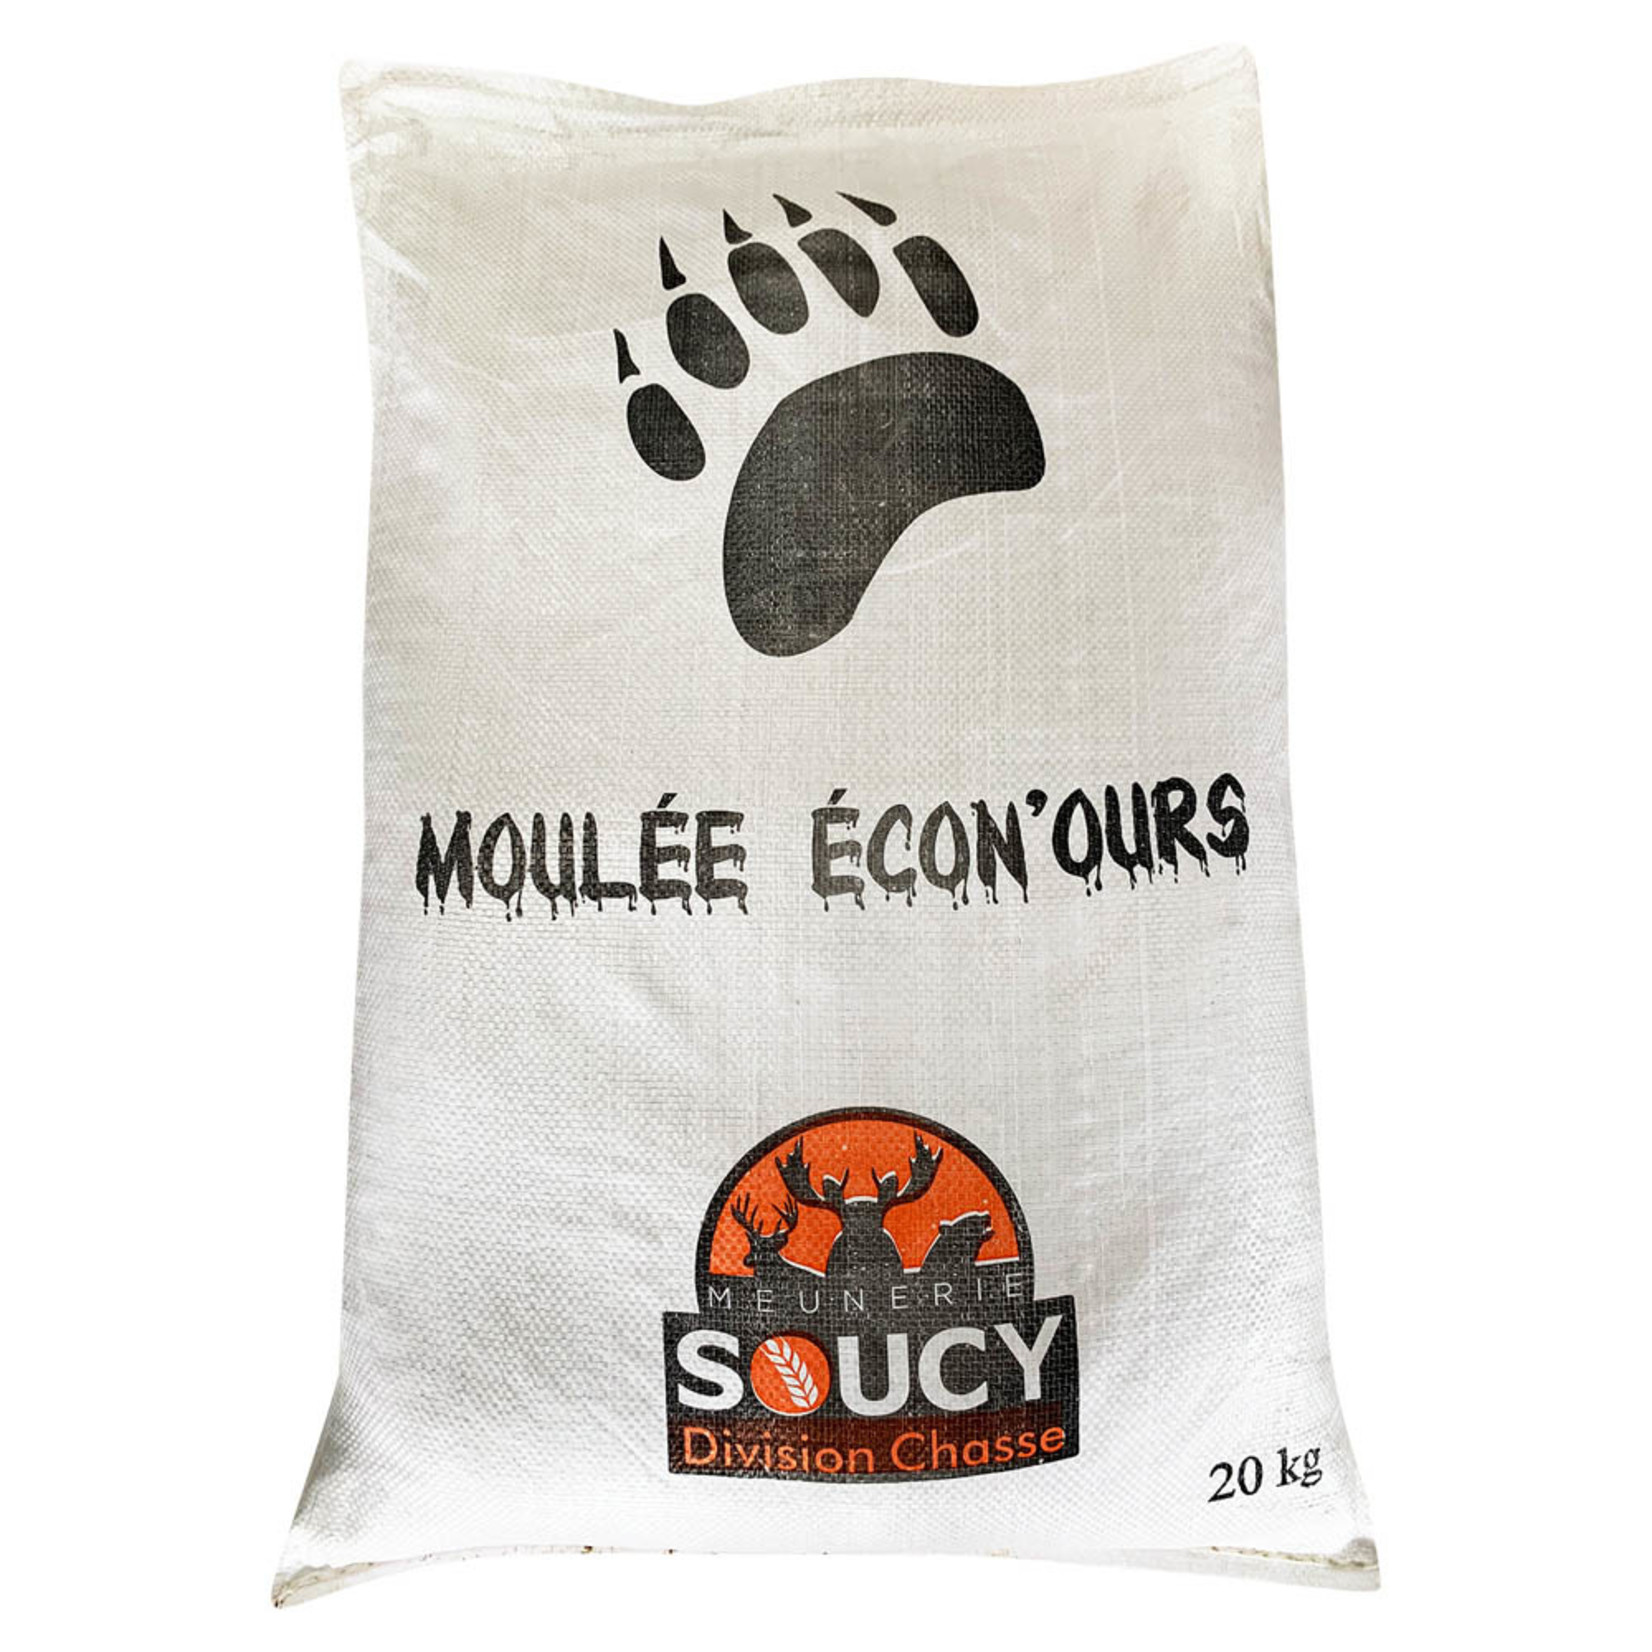 Meunerie Soucy Moulée Écon'ours 20kg